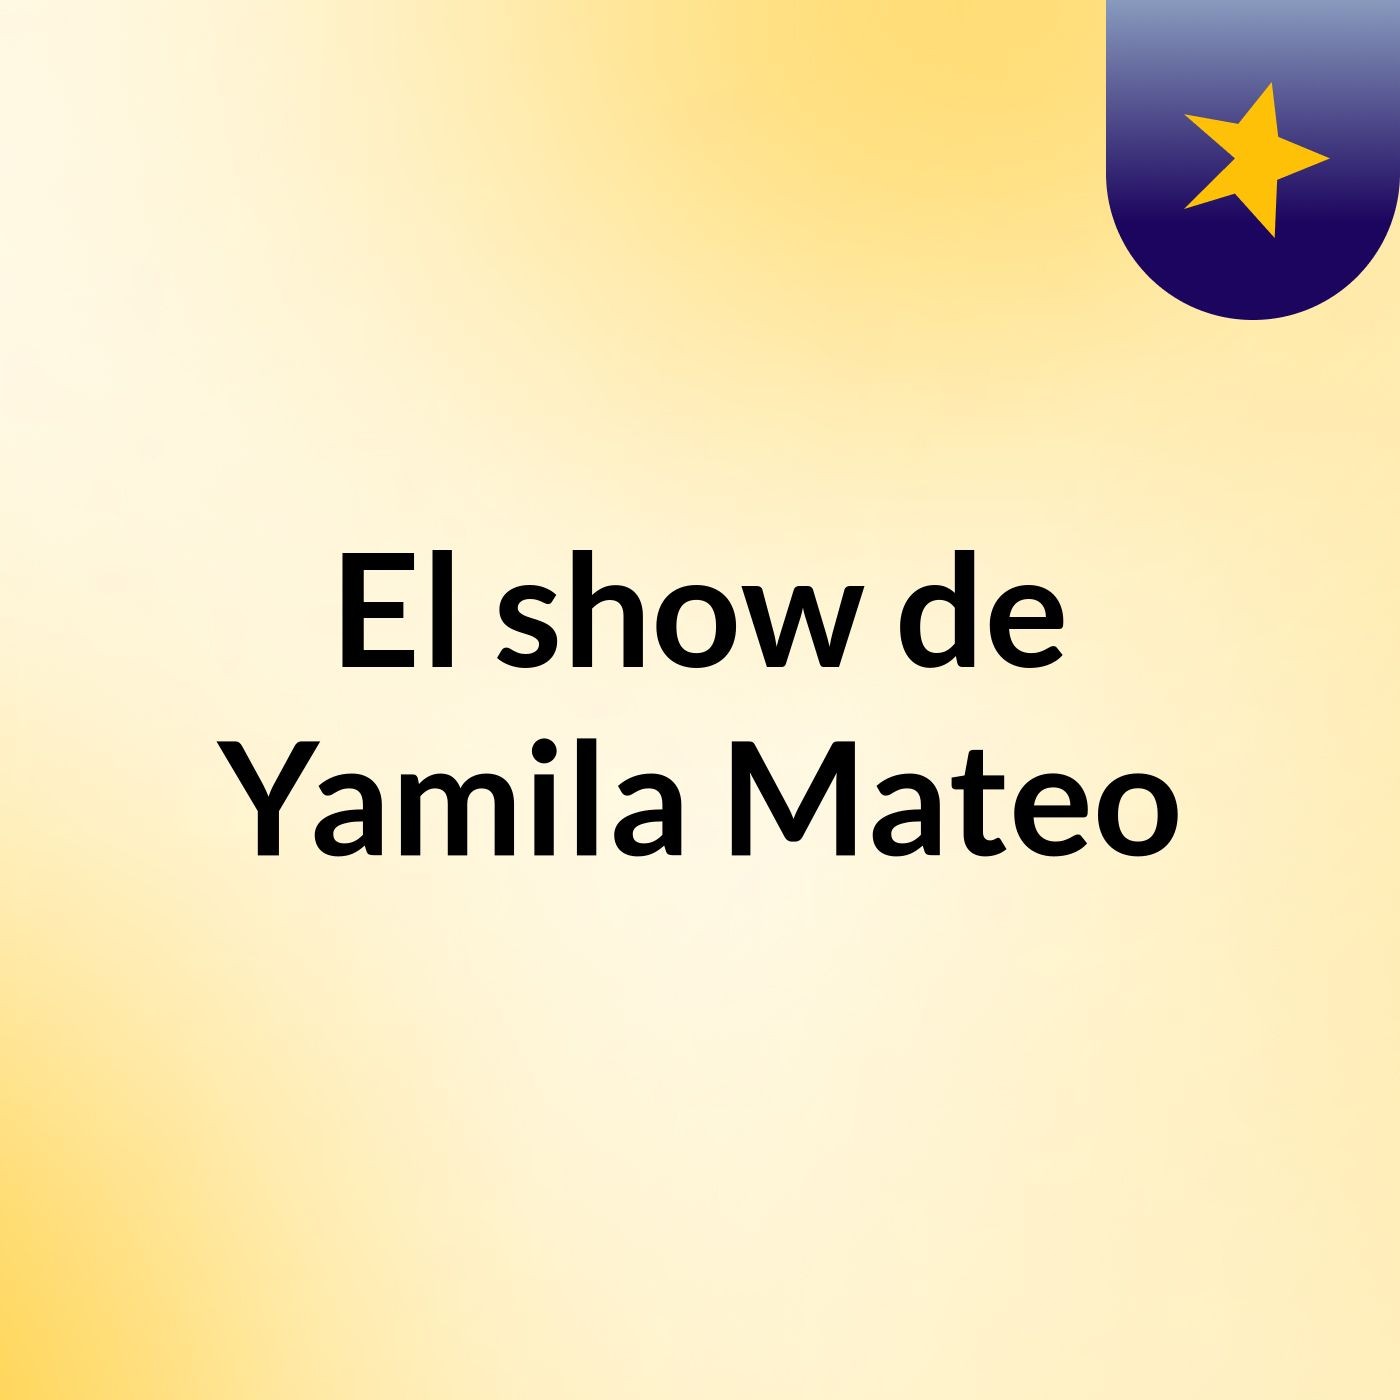 El show de Yamila Mateo